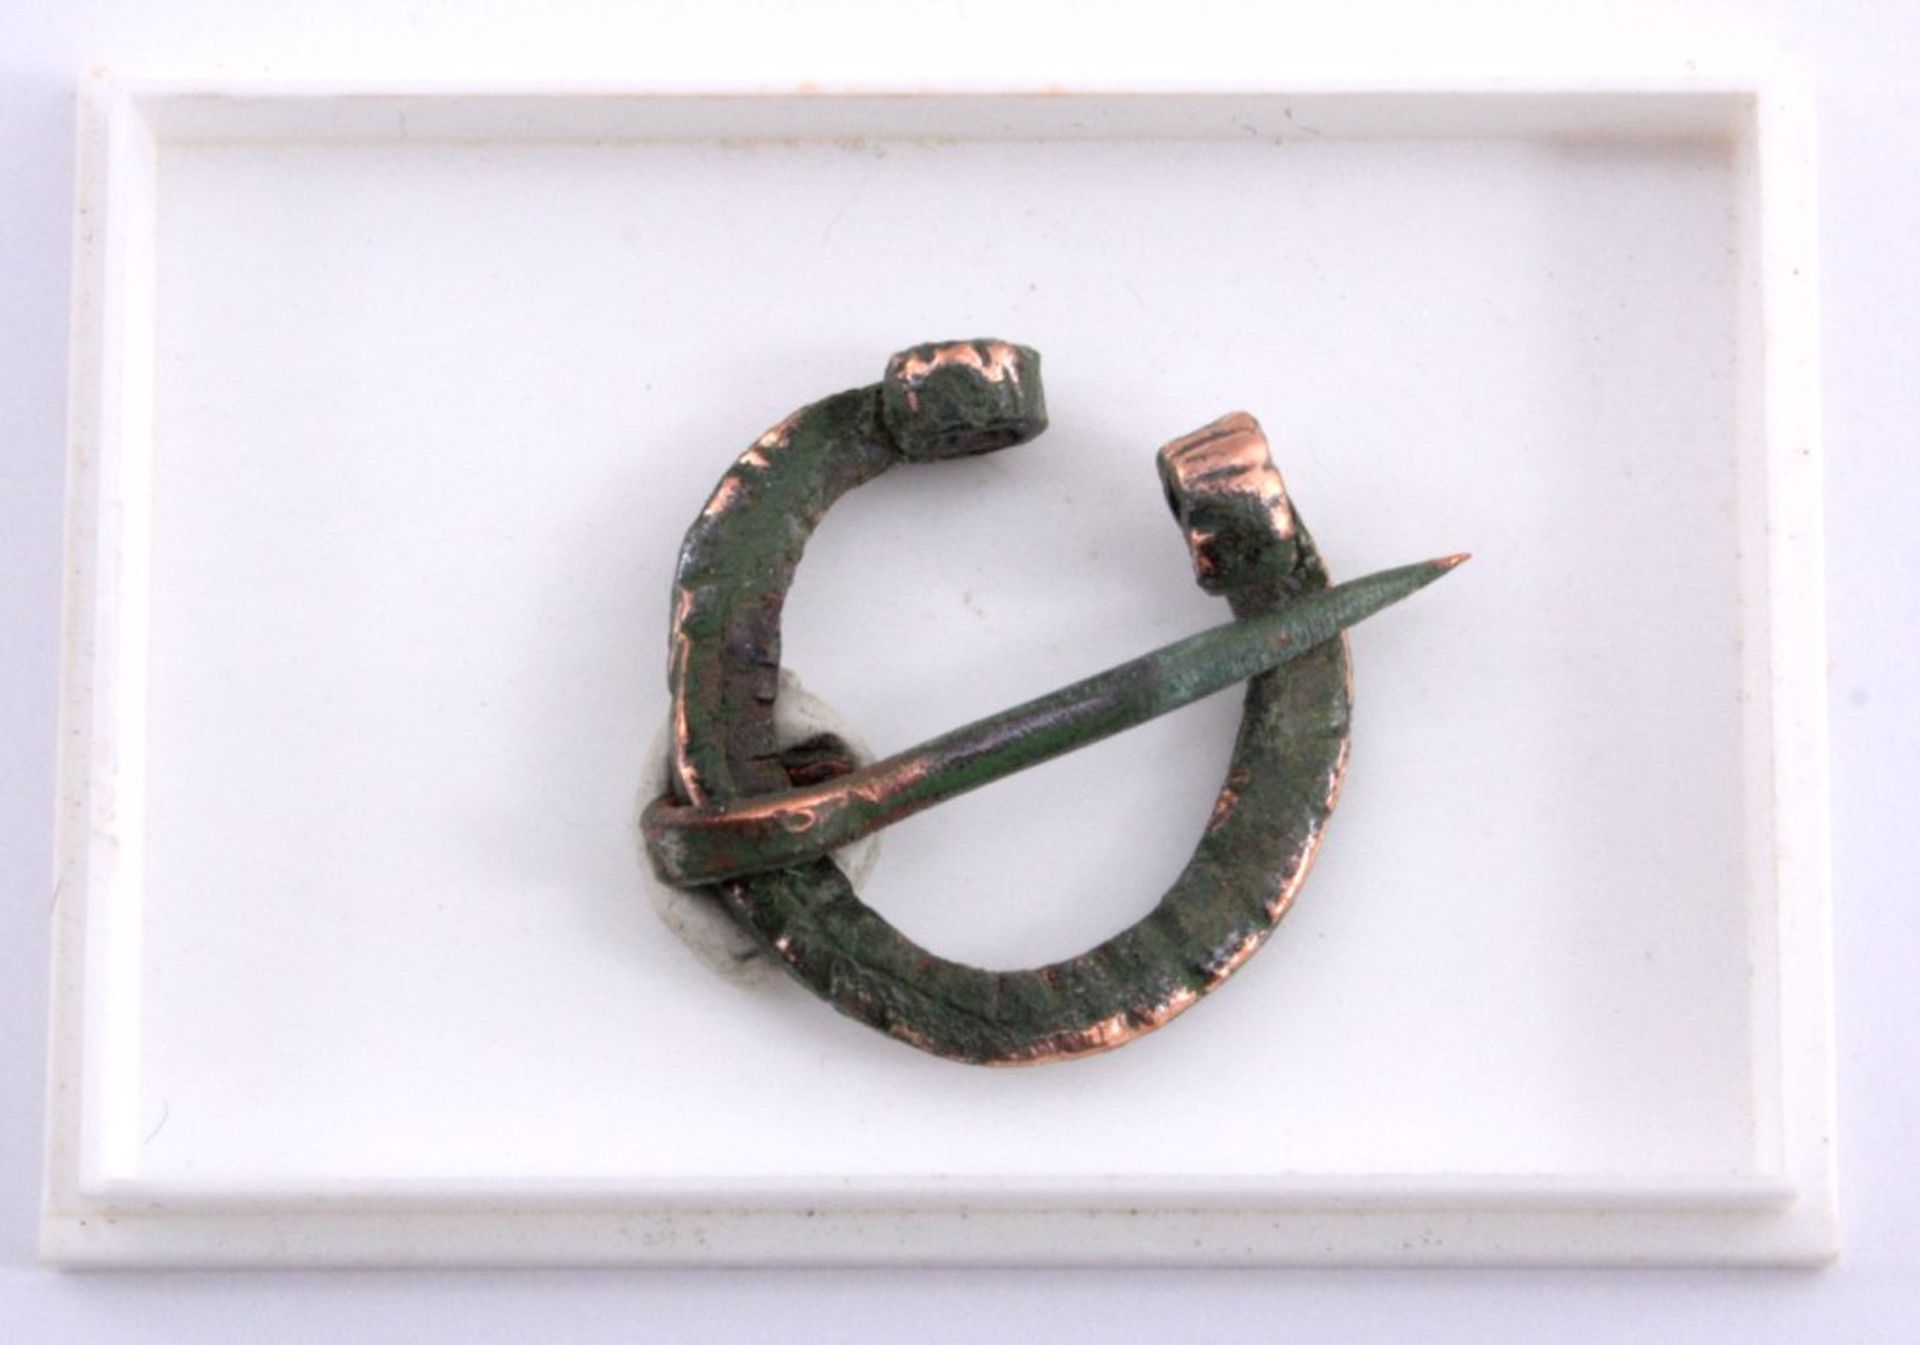 Römische Omega-Fibel aus Bronzemit verziertem Rand, ca. D 2,5 cmMindestpreis: 10 EUR